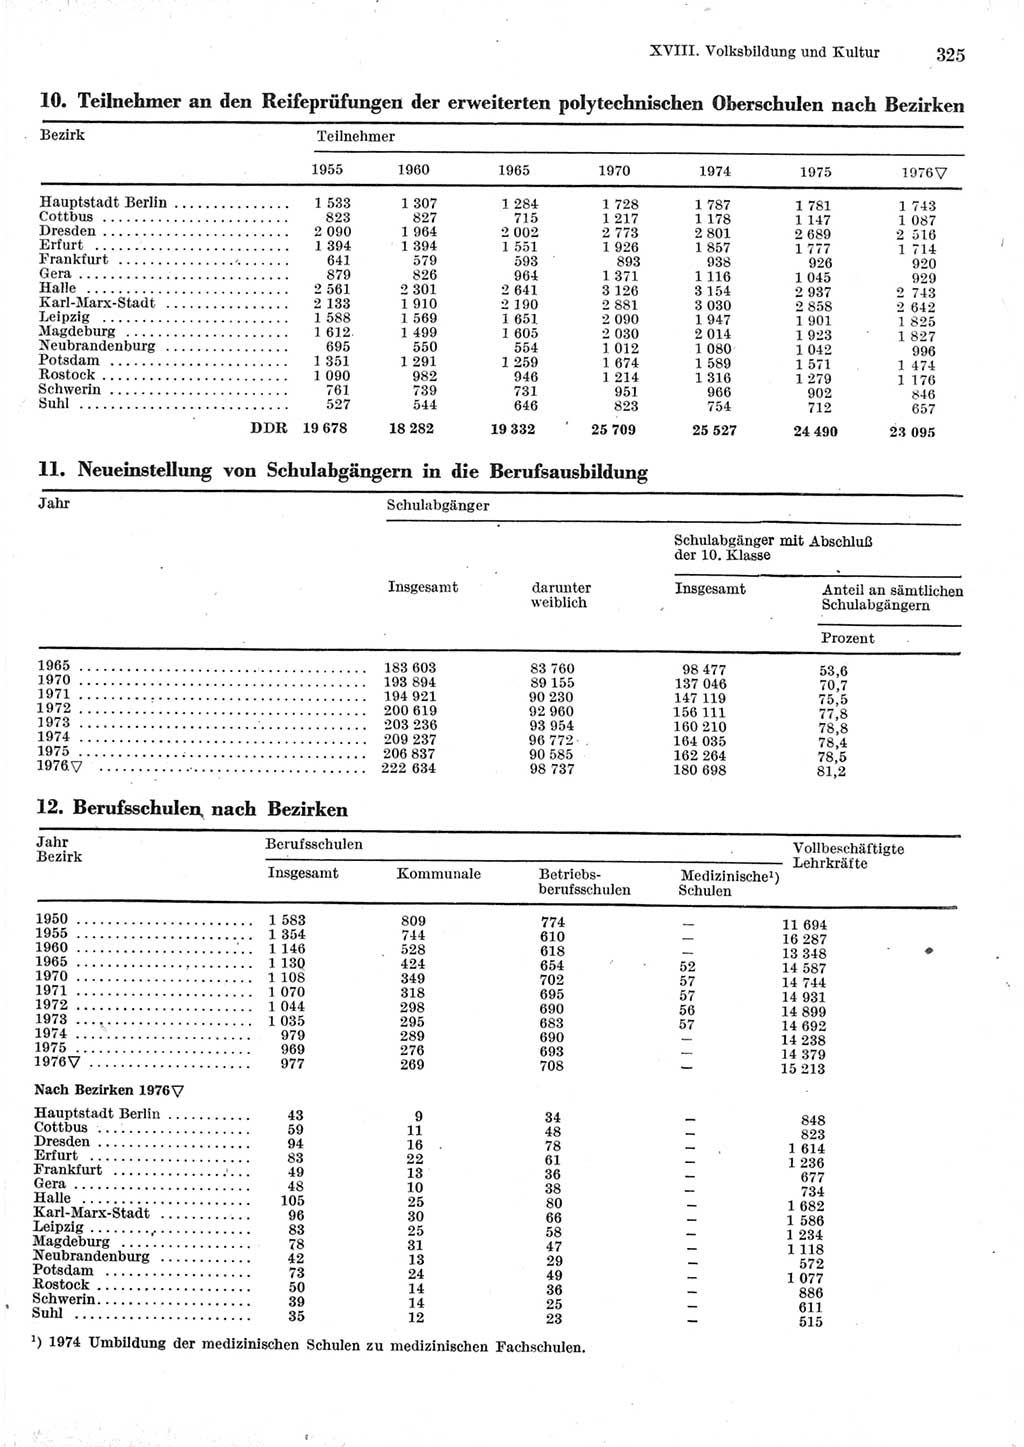 Statistisches Jahrbuch der Deutschen Demokratischen Republik (DDR) 1977, Seite 325 (Stat. Jb. DDR 1977, S. 325)